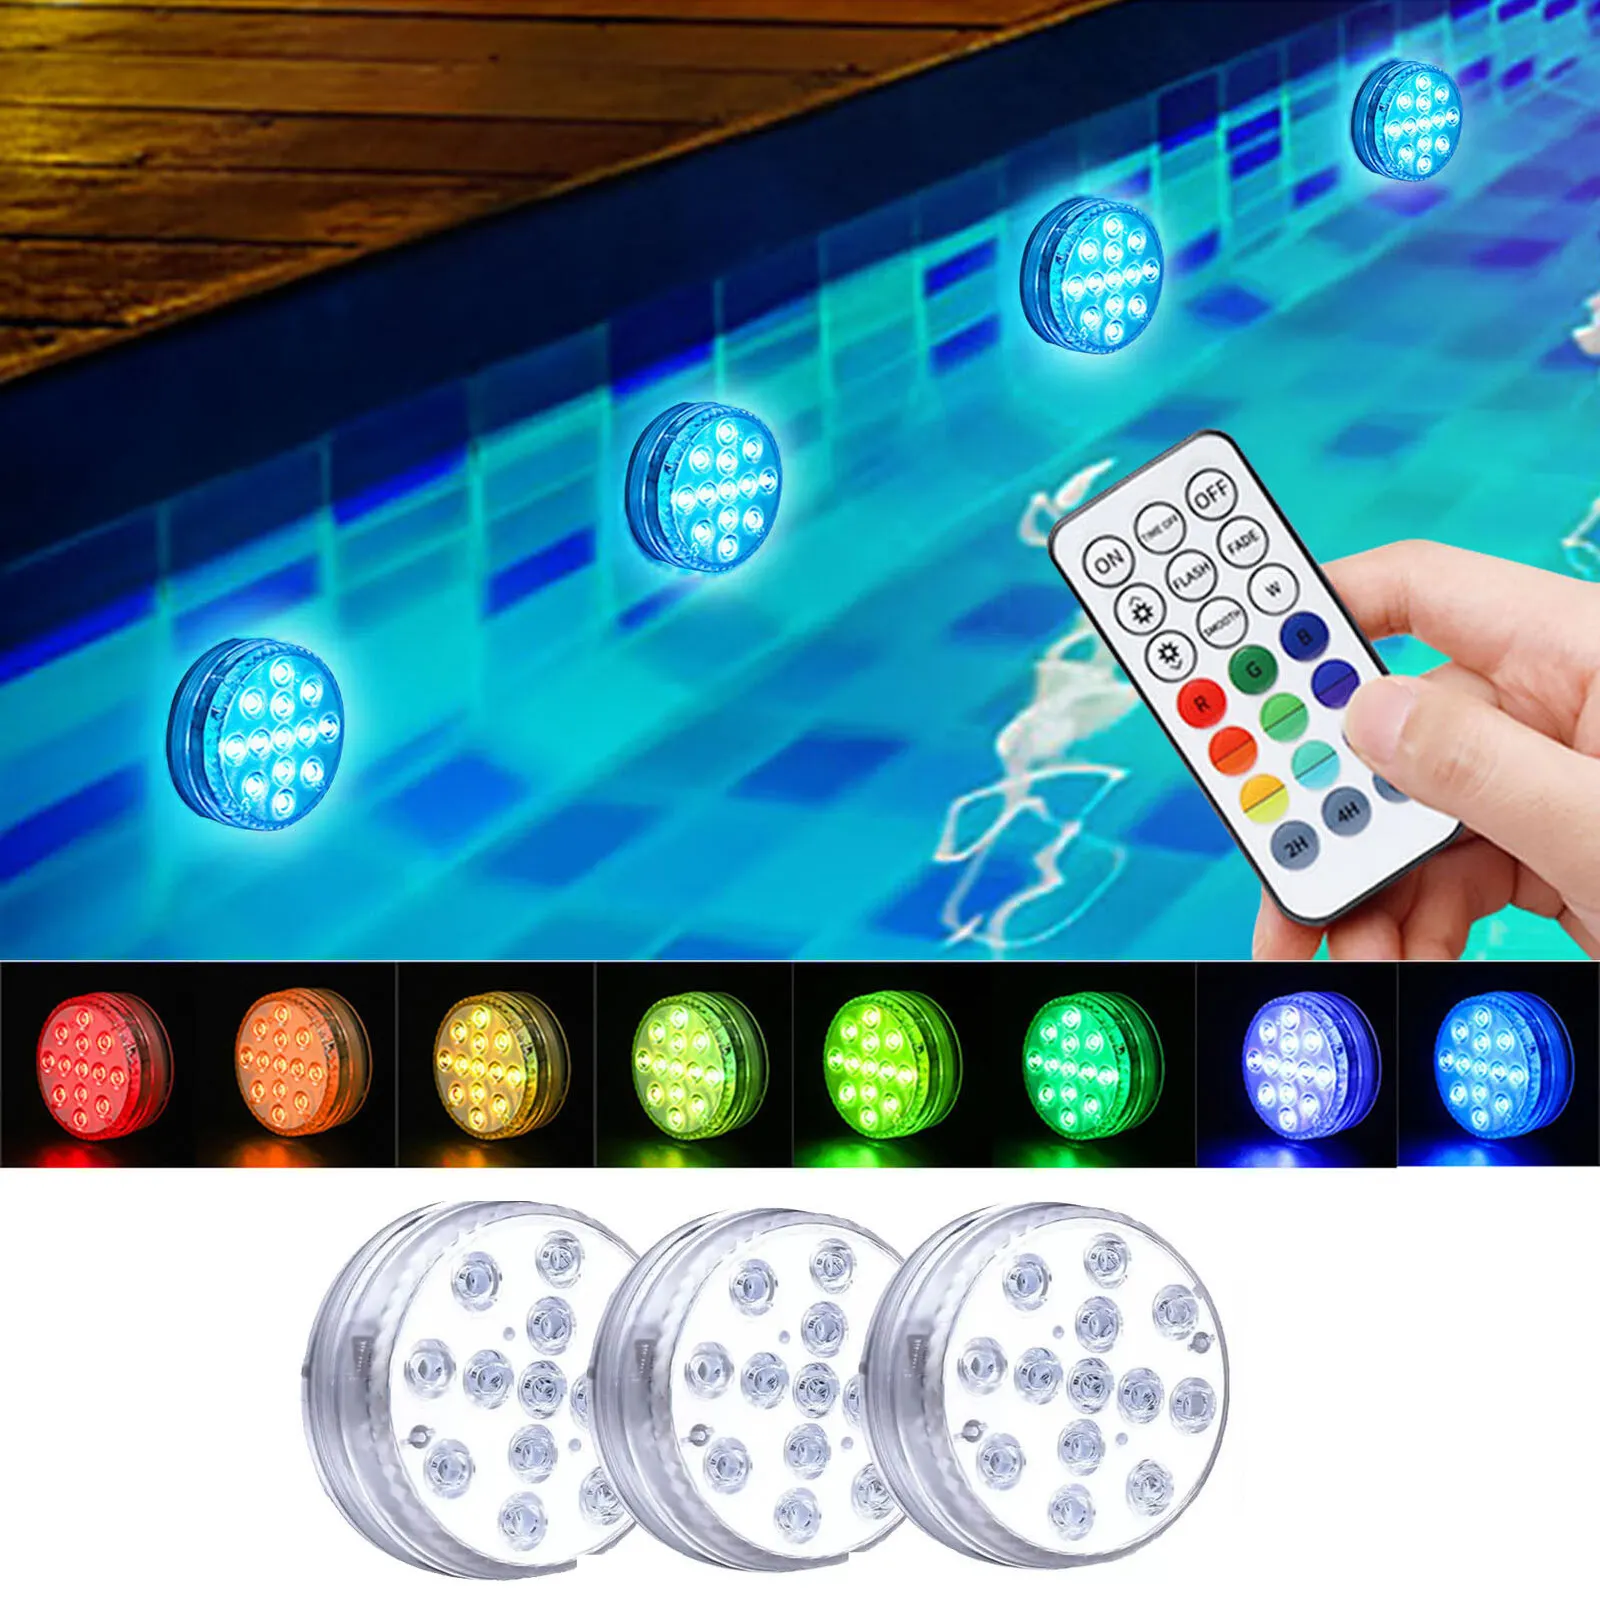 OEM lampu bawah air LED IP68 lampu LED, lampu kolam renang LED warna-warni Remote RGB tahan air